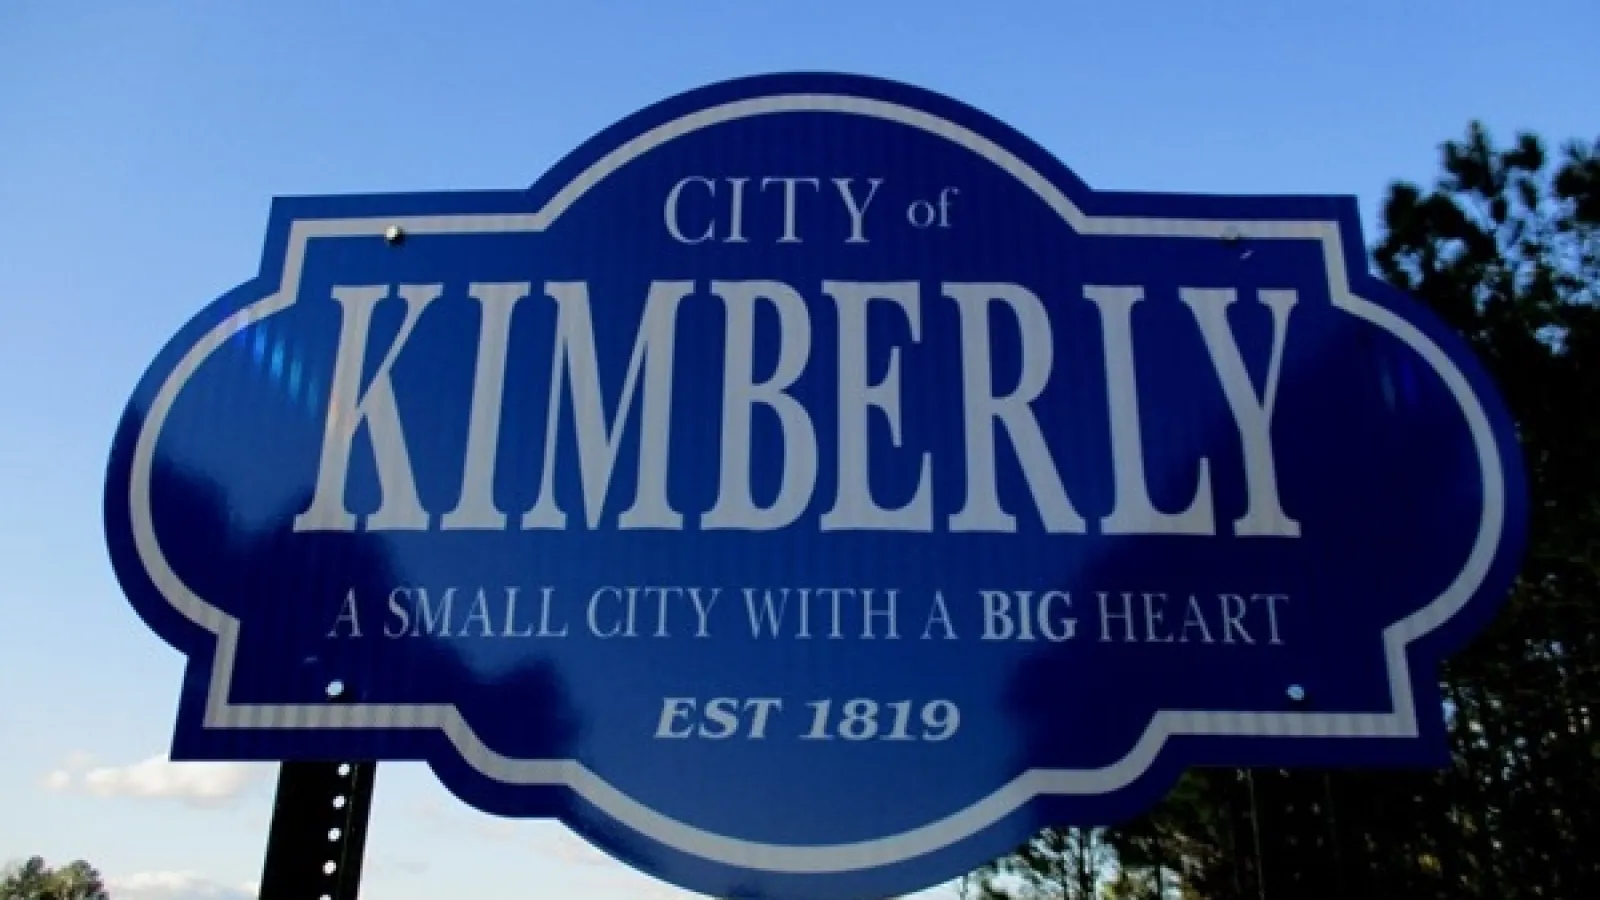 Kimberly City Alabama sign